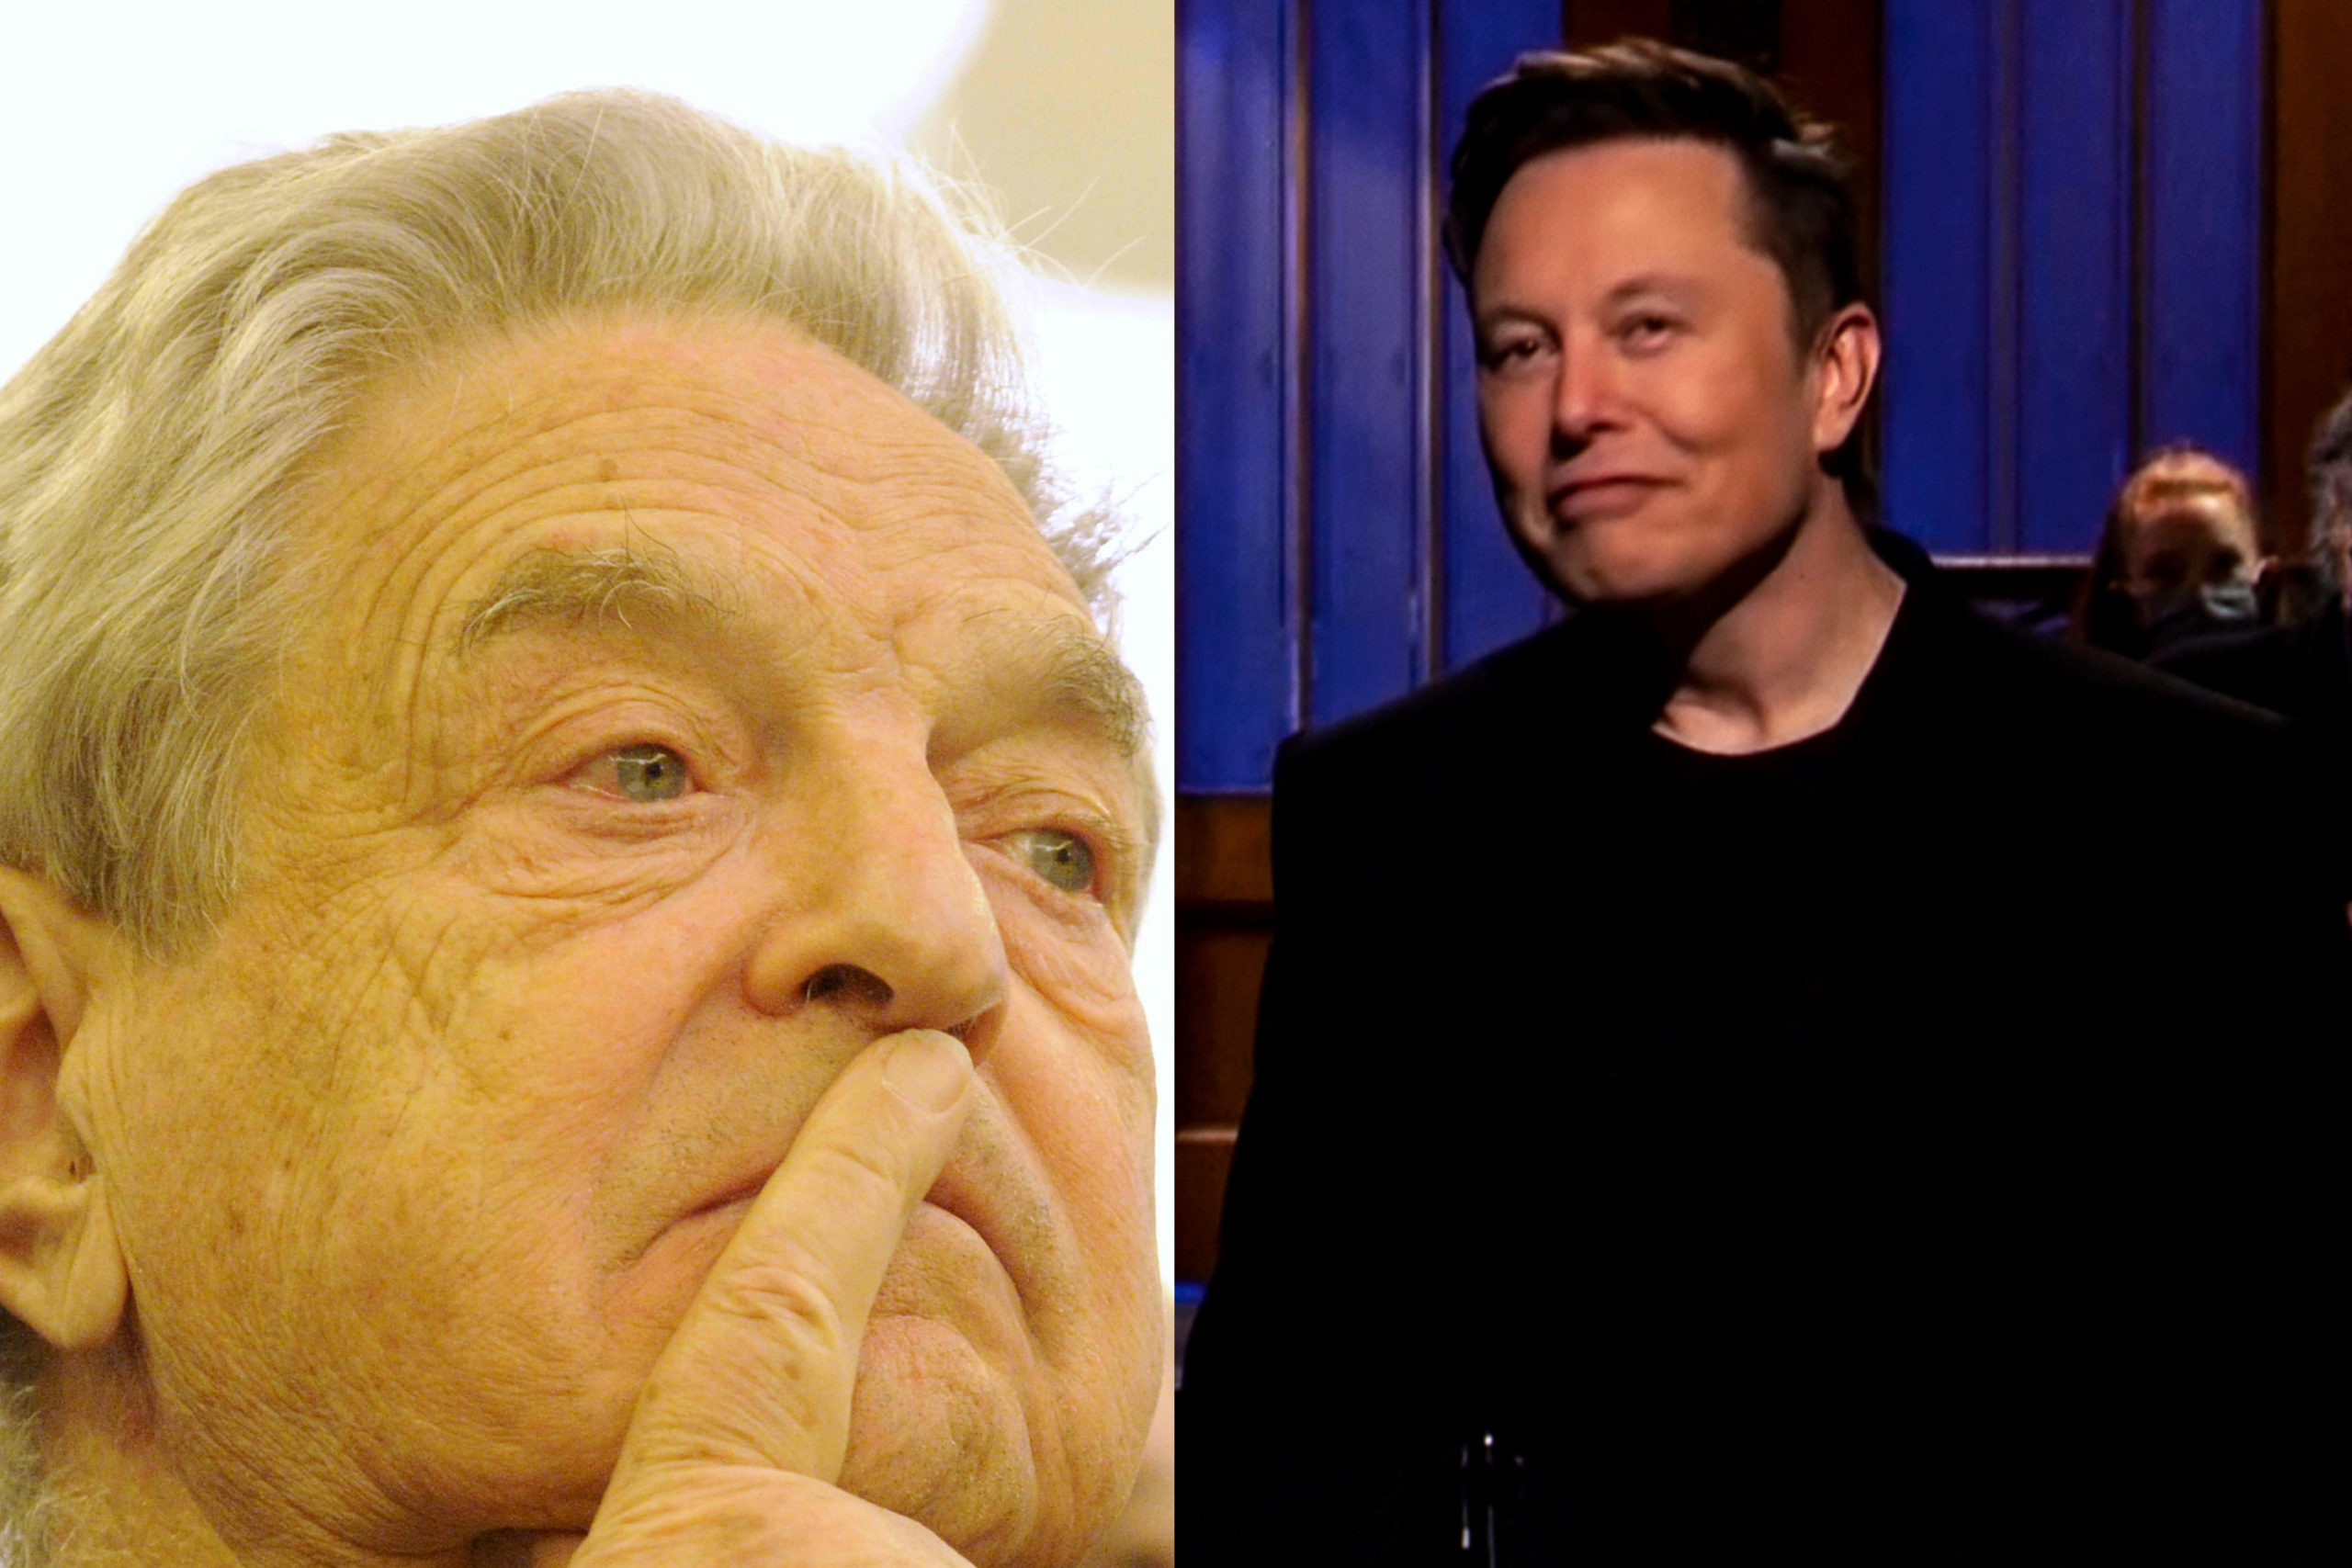 Elon Musk azzal vádolja Soros alapítványát, hogy el akarja pusztítani a nyugati civilizációt